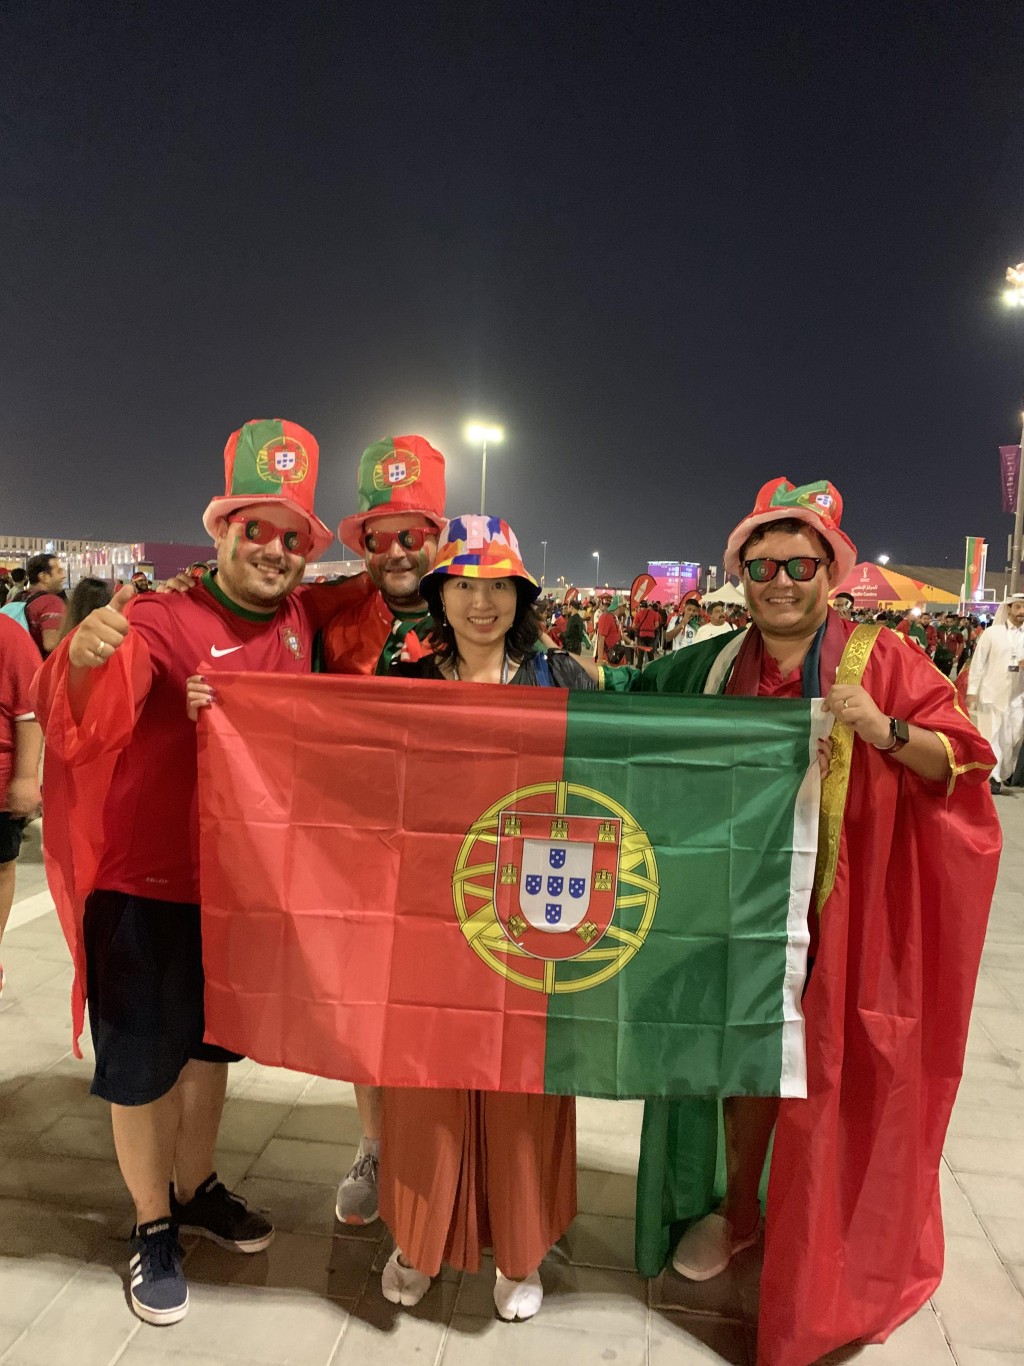 葡萄牙球迷在外形像金饭碗的球场外合照。